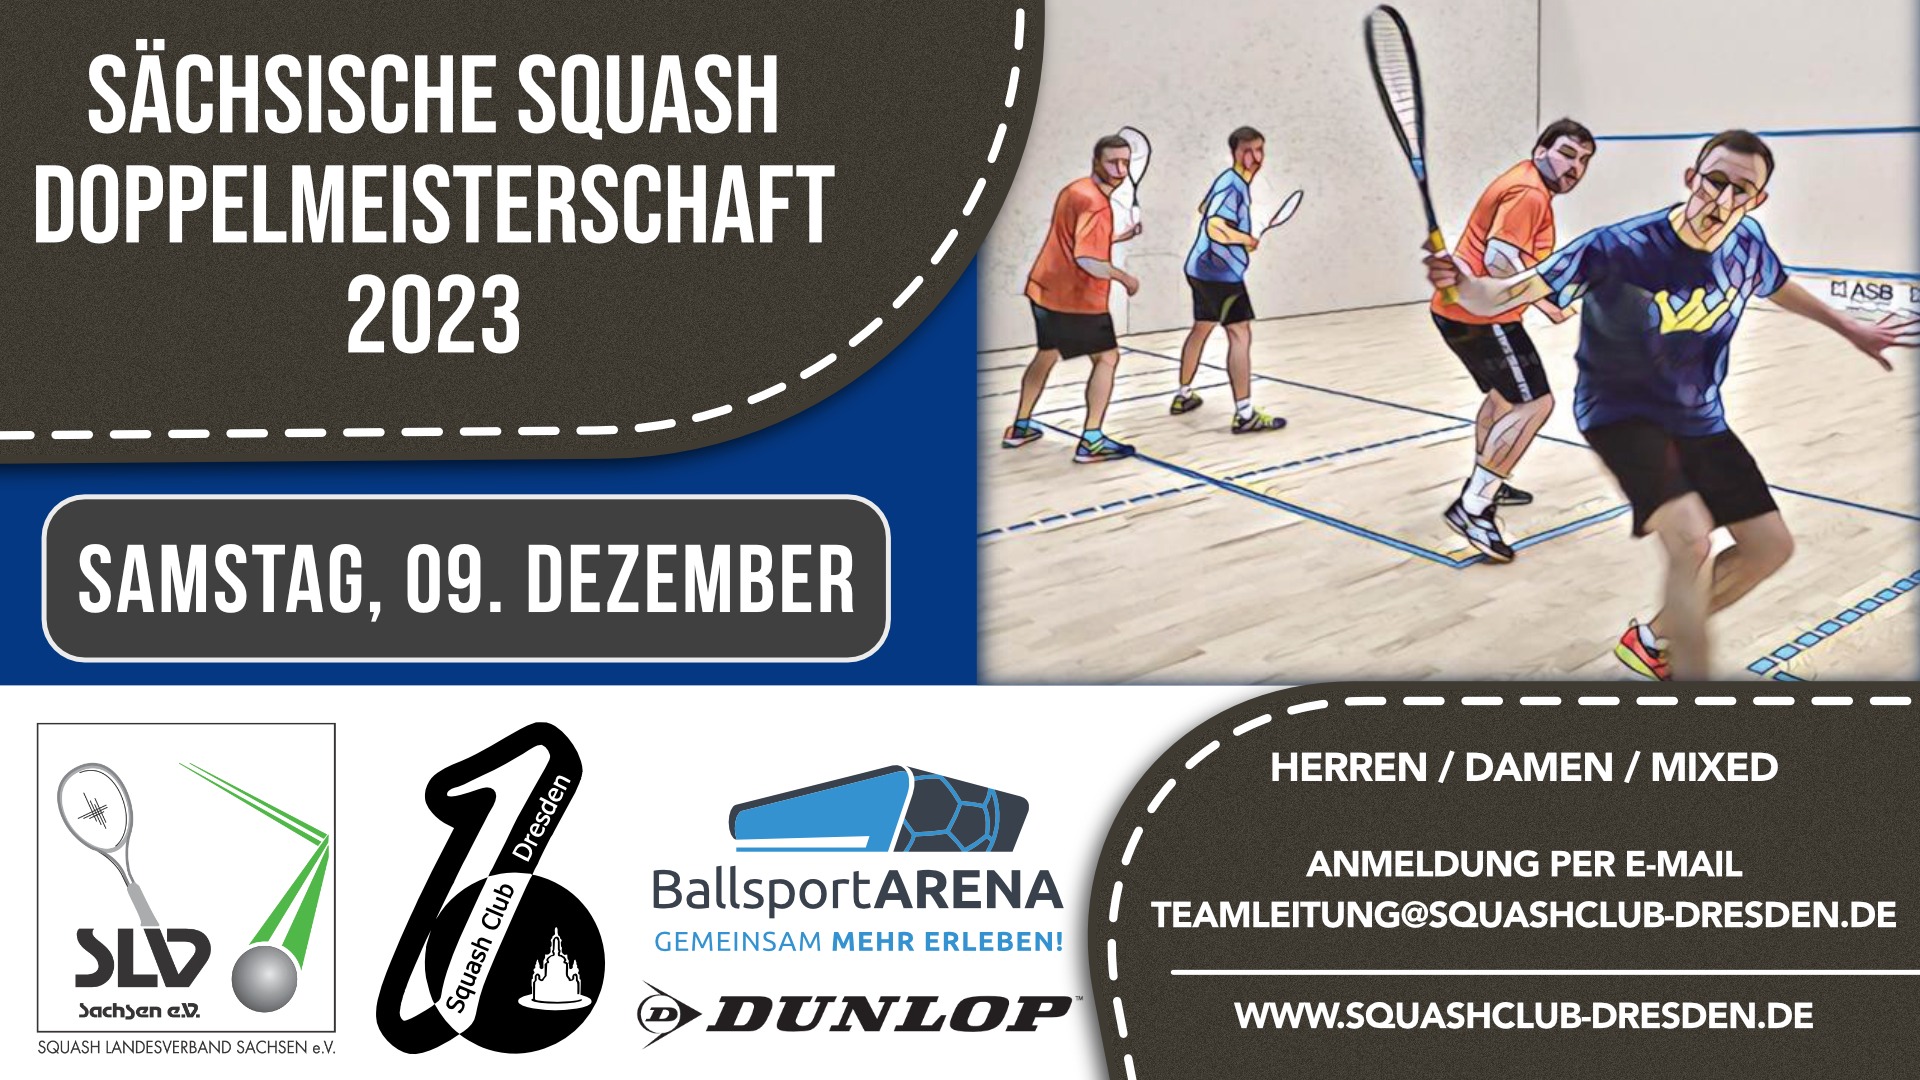 Sächsische Squash Doppelmeisterschaft 2023 Beitragsbild